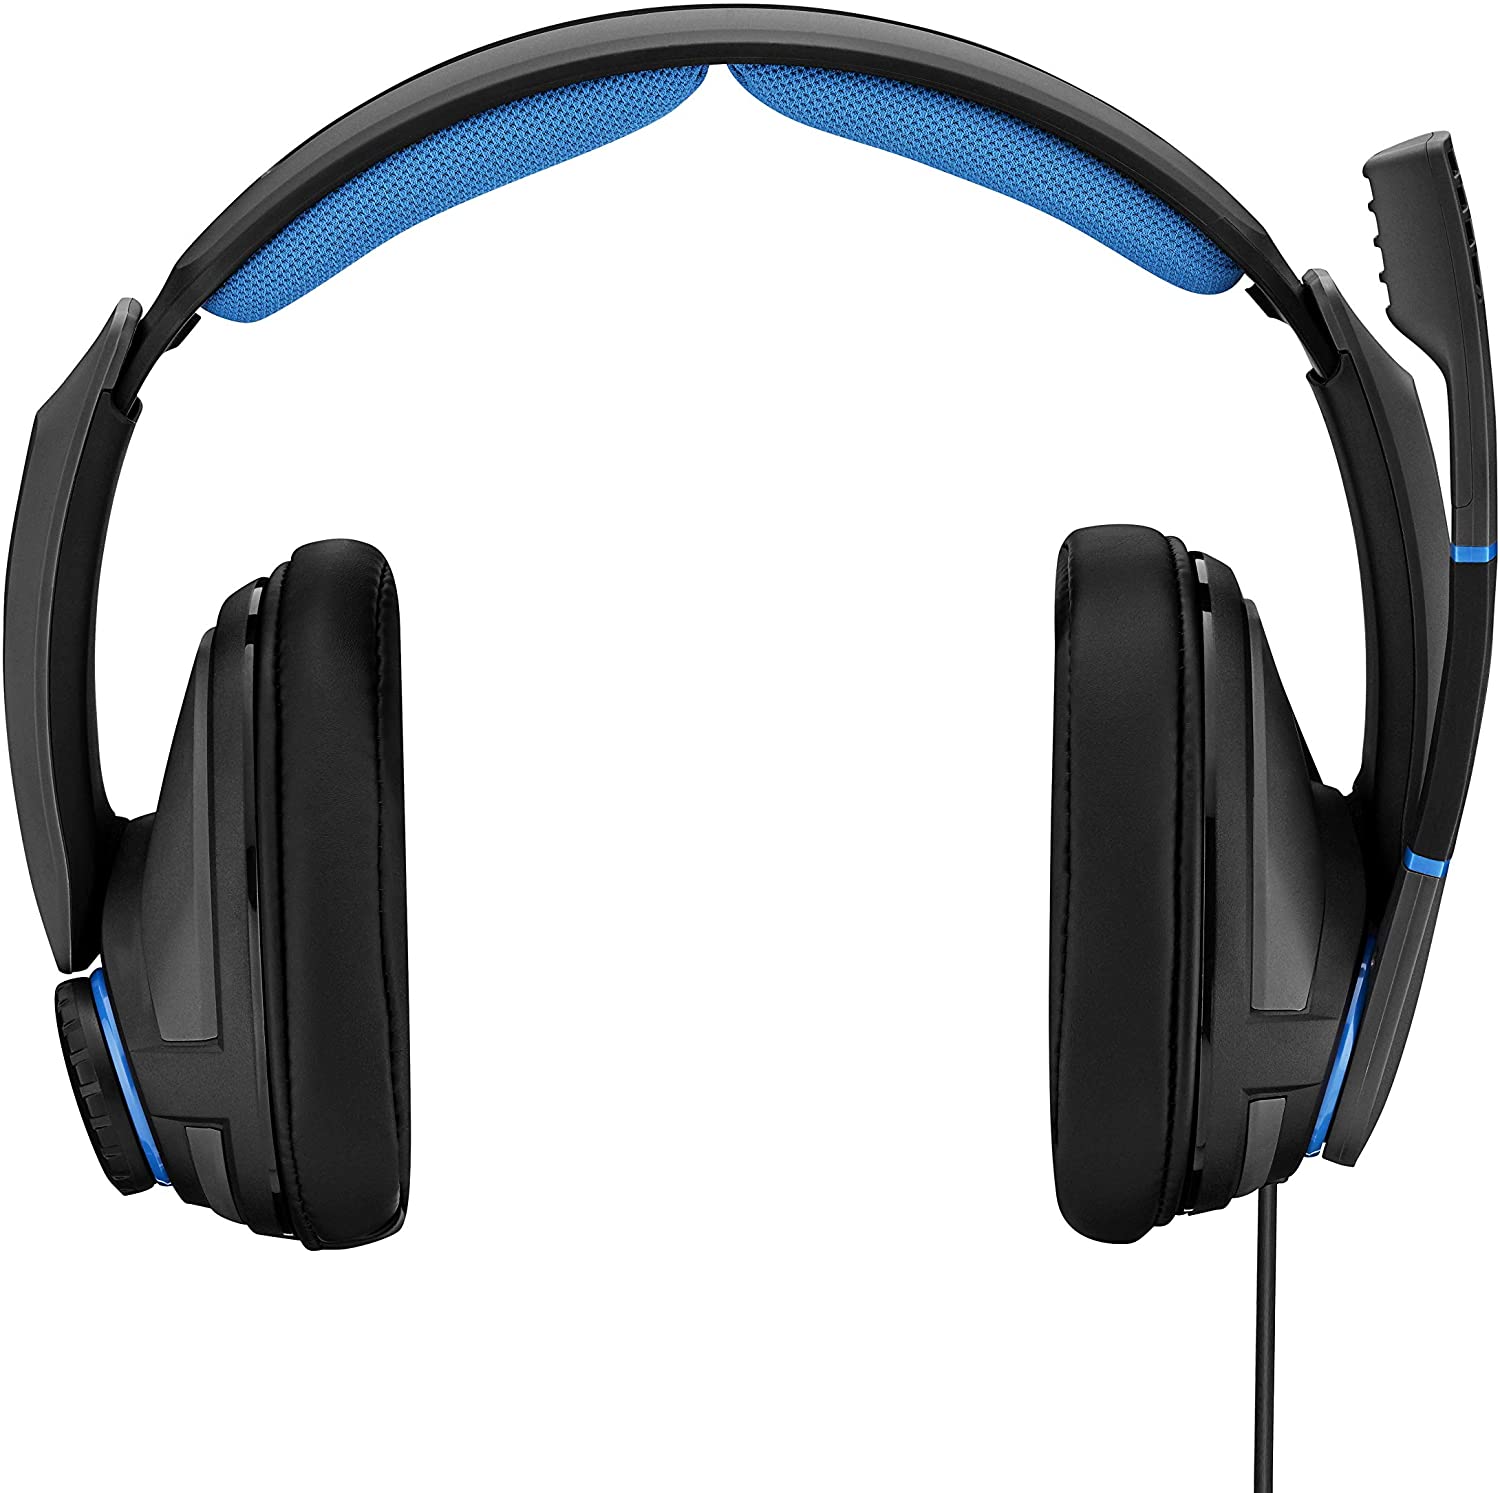 Sennheiser GSP 300 wired gaming headset